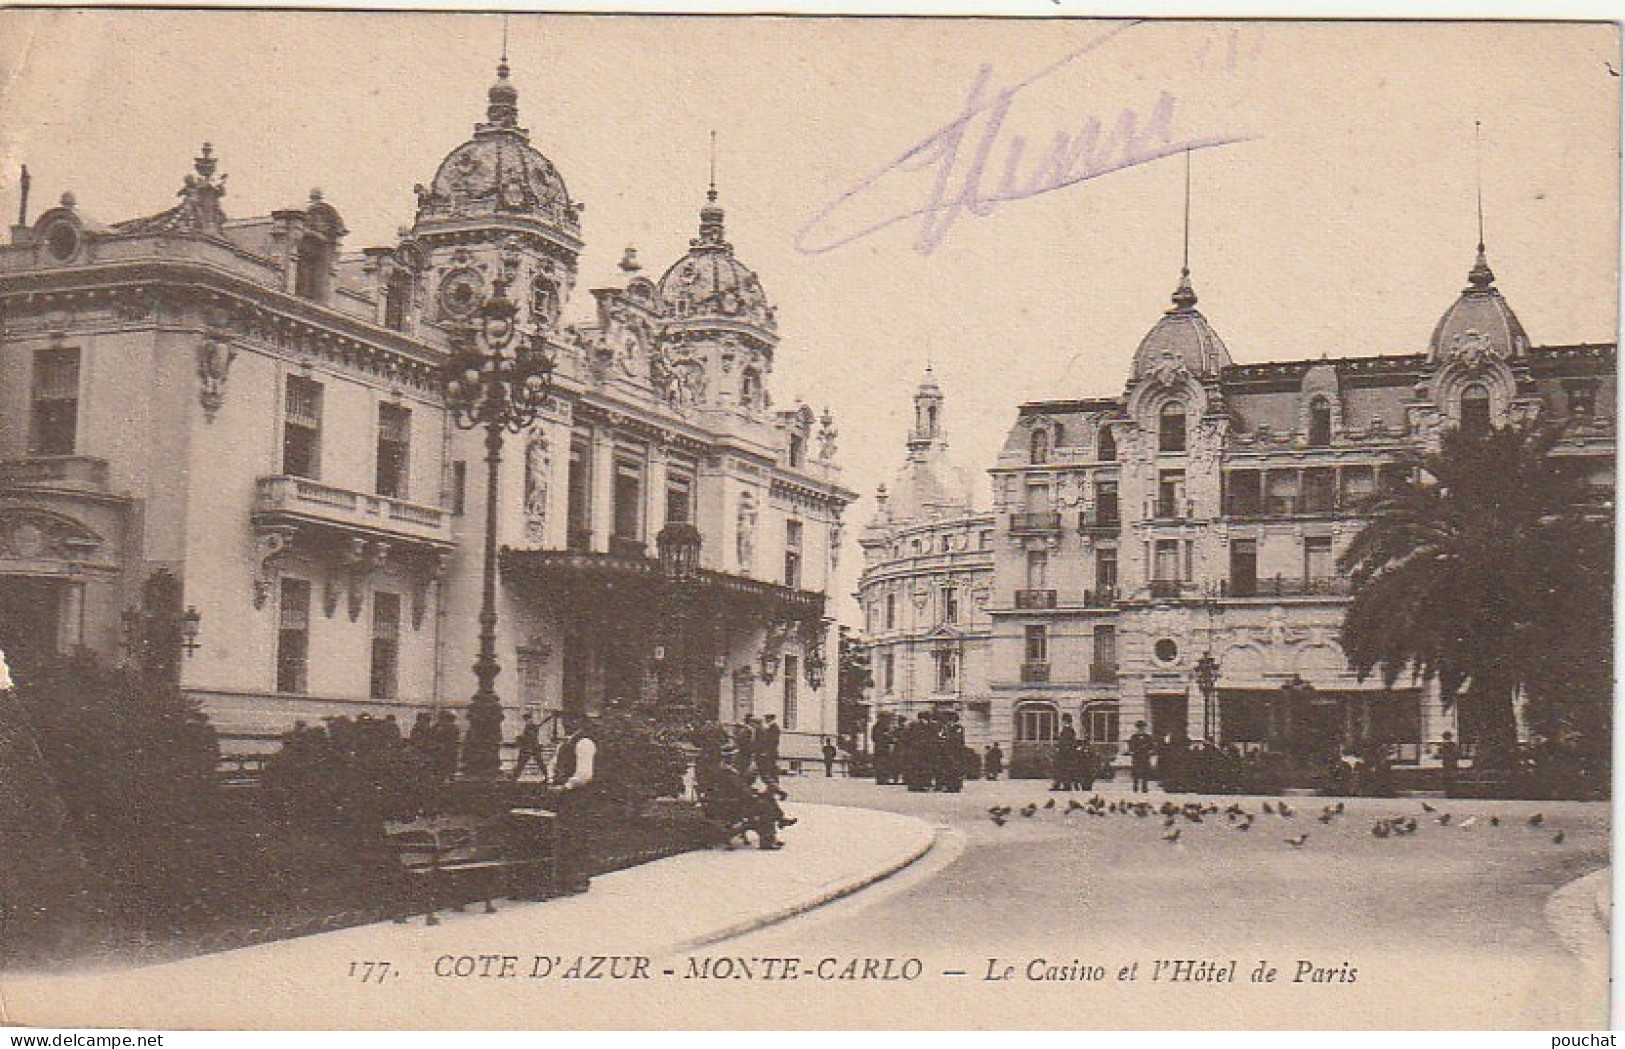 MO 14 - MONTE CARLO - LE CASINO ET L' HOTEL DE PARIS - 2 SCANS - Hoteles